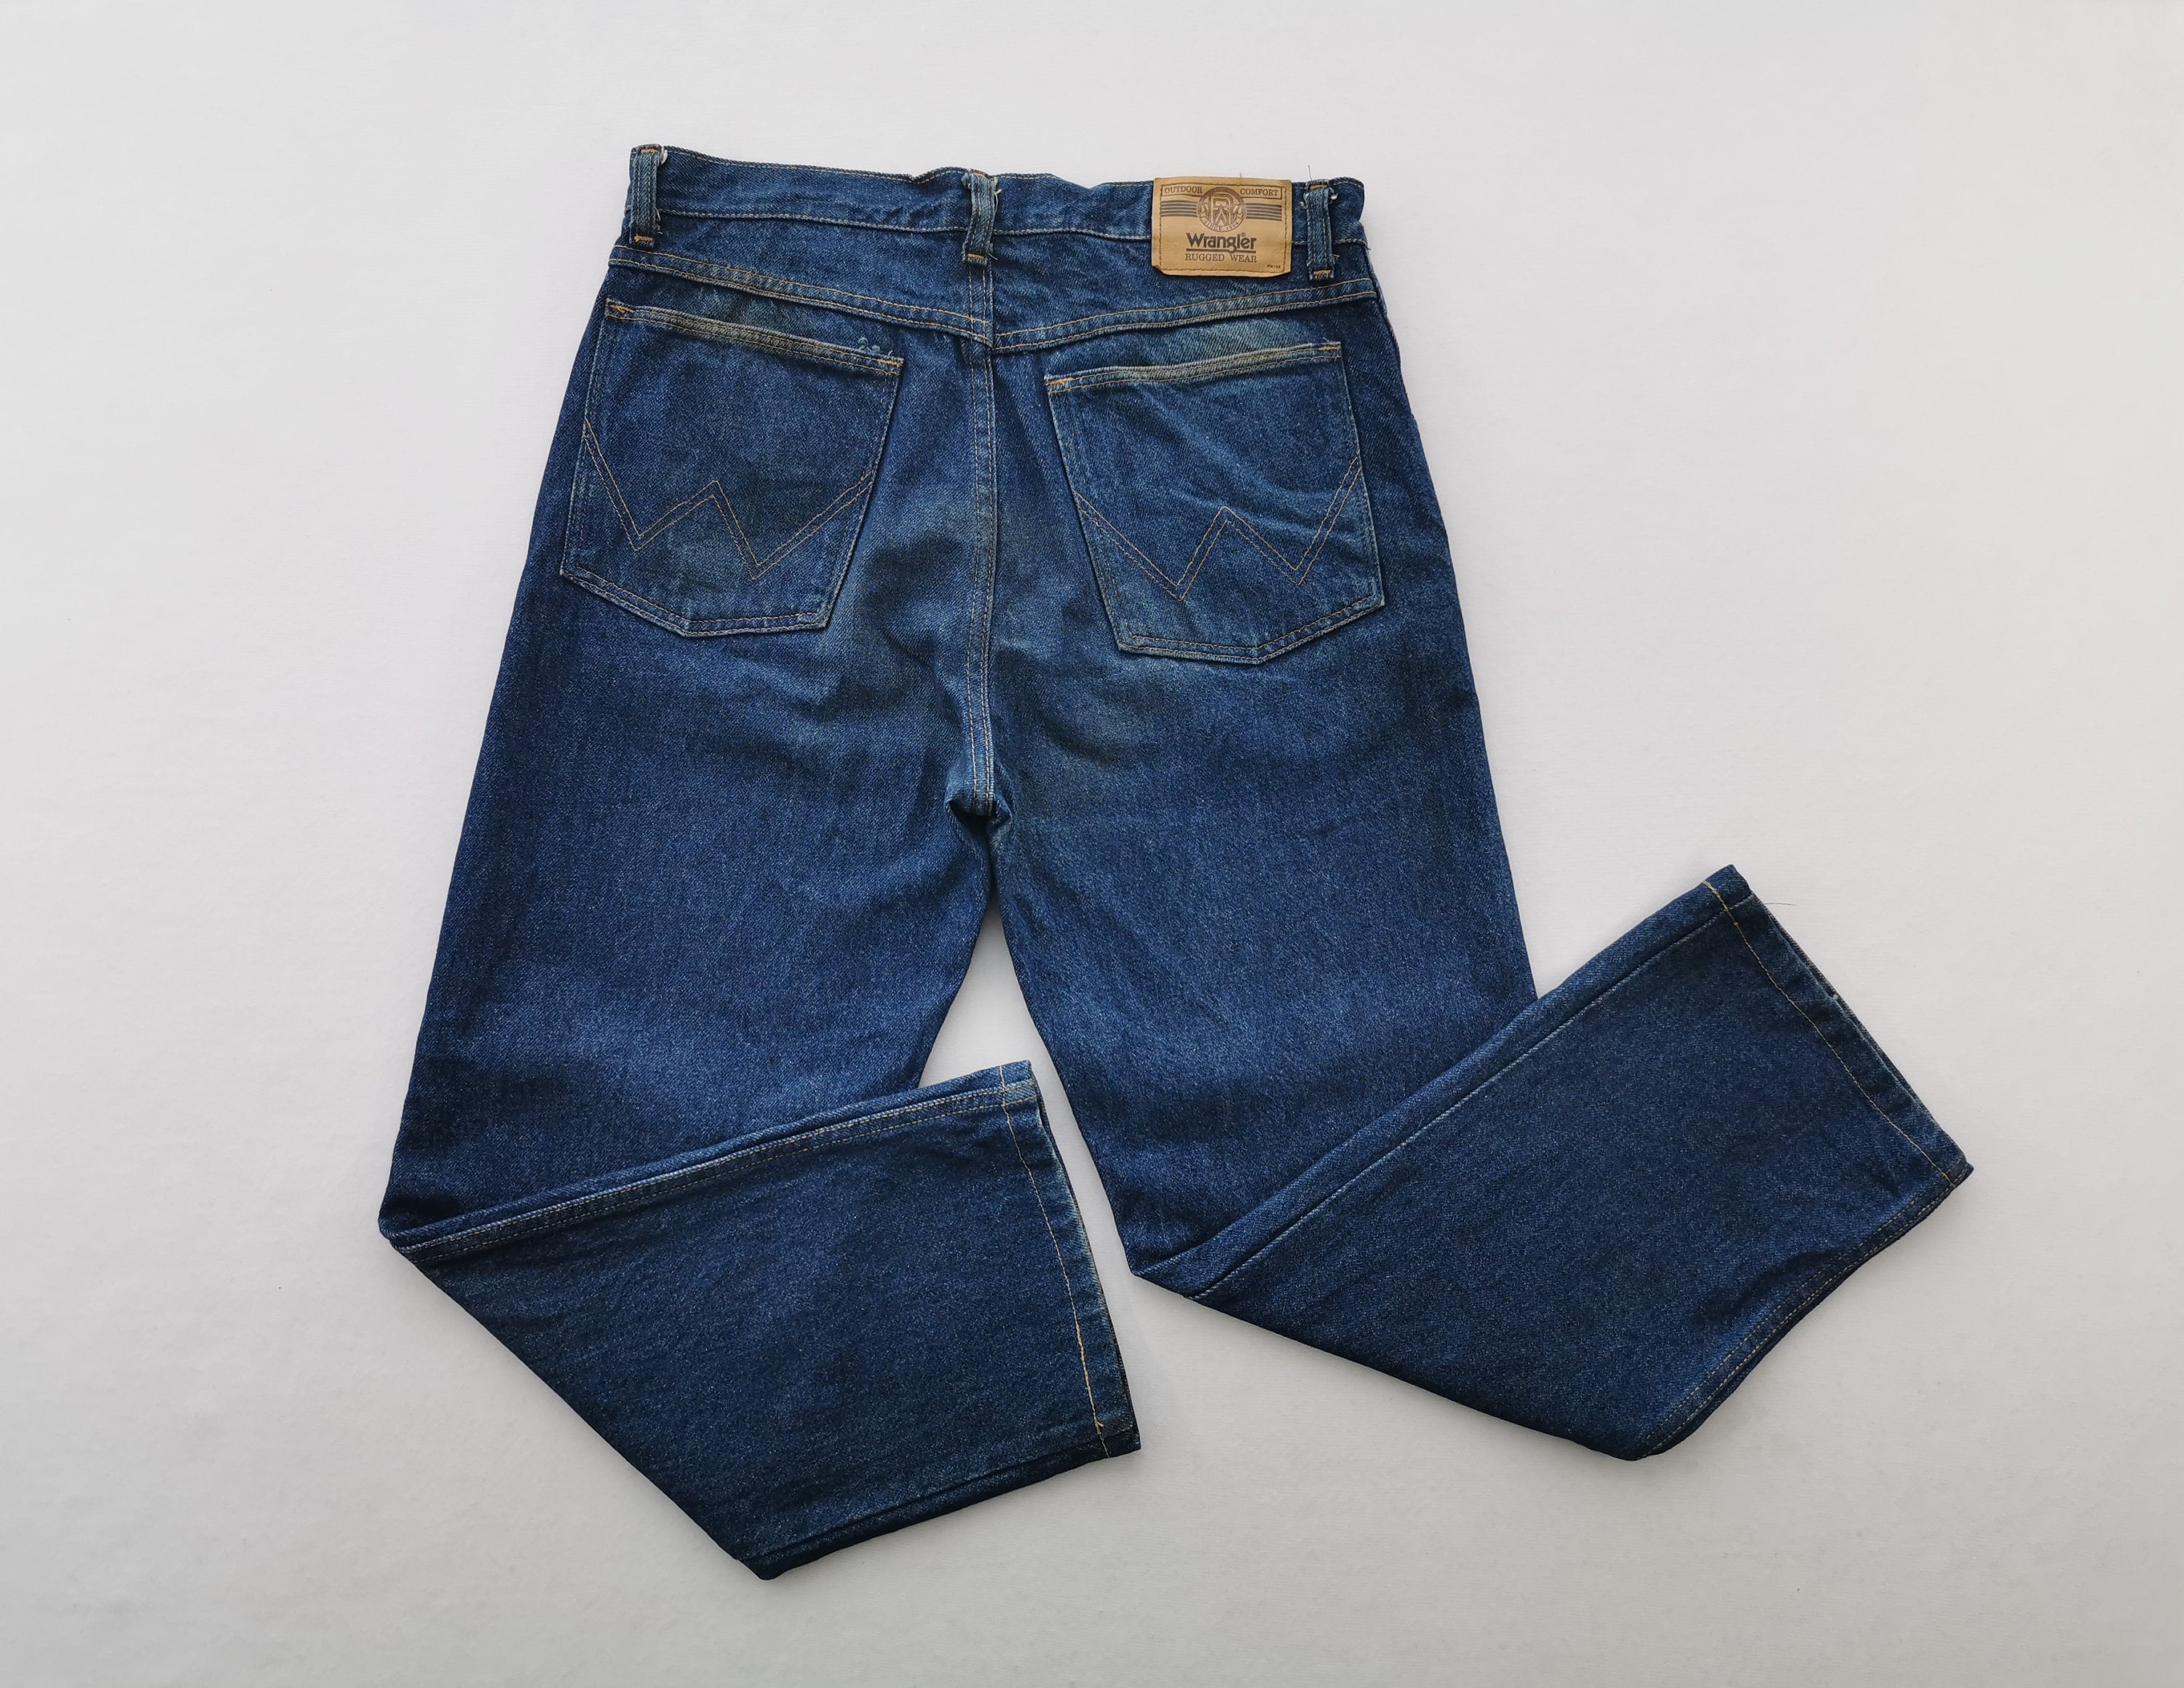 Wrangler Jeans - Etsy